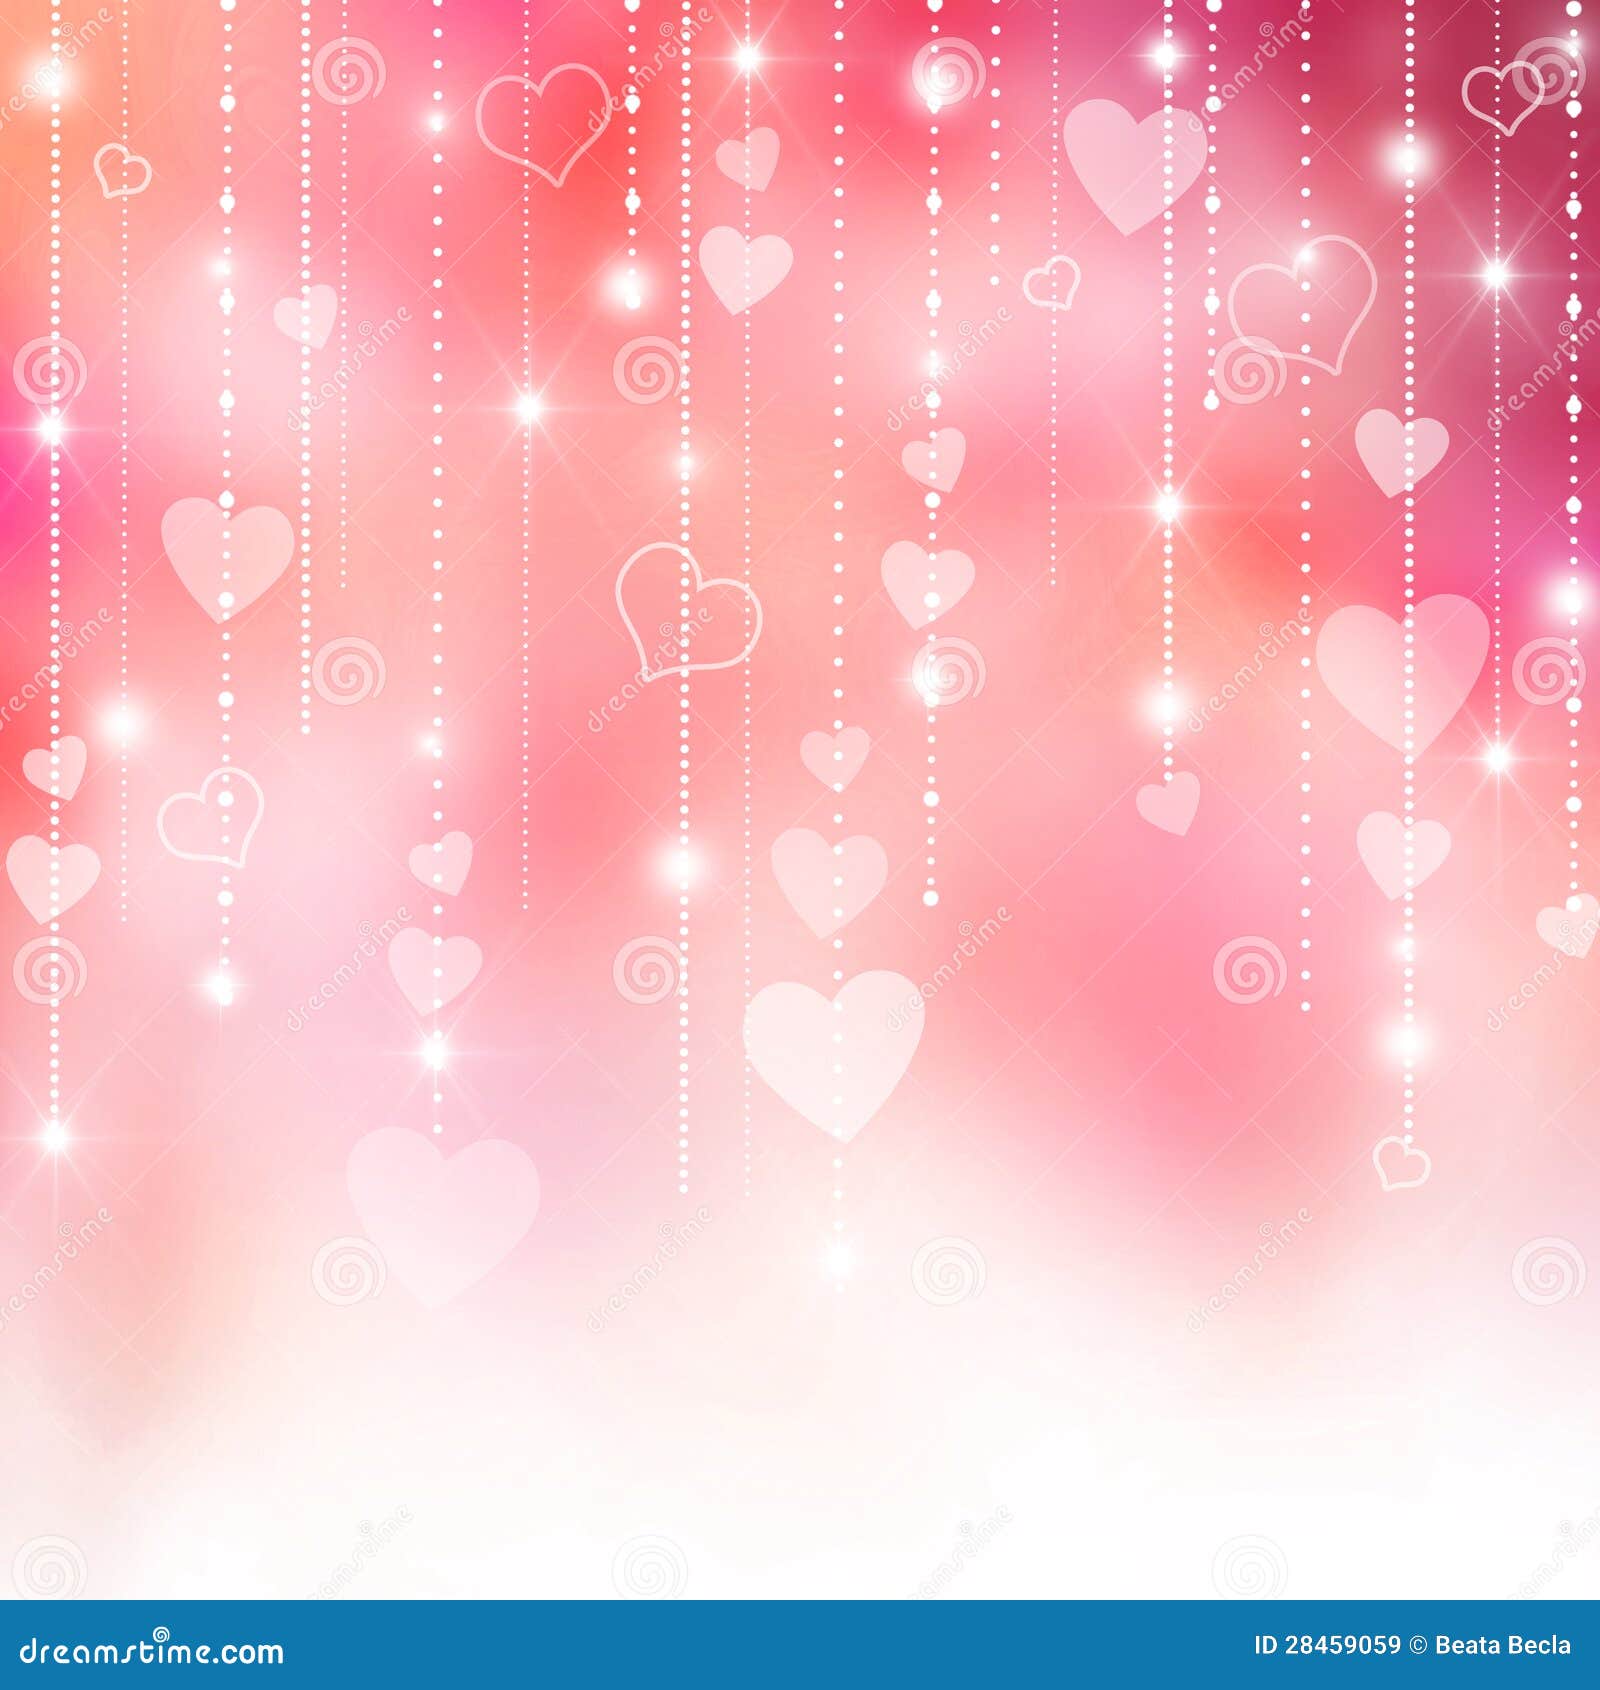 Hình nền Valentine màu hồng là điểm nhấn cho không gian chứa đầy yêu thương lãng mạn của bạn. Đừng bỏ lỡ cơ hội để mang đến một món quà đặc biệt cho người thương của bạn.